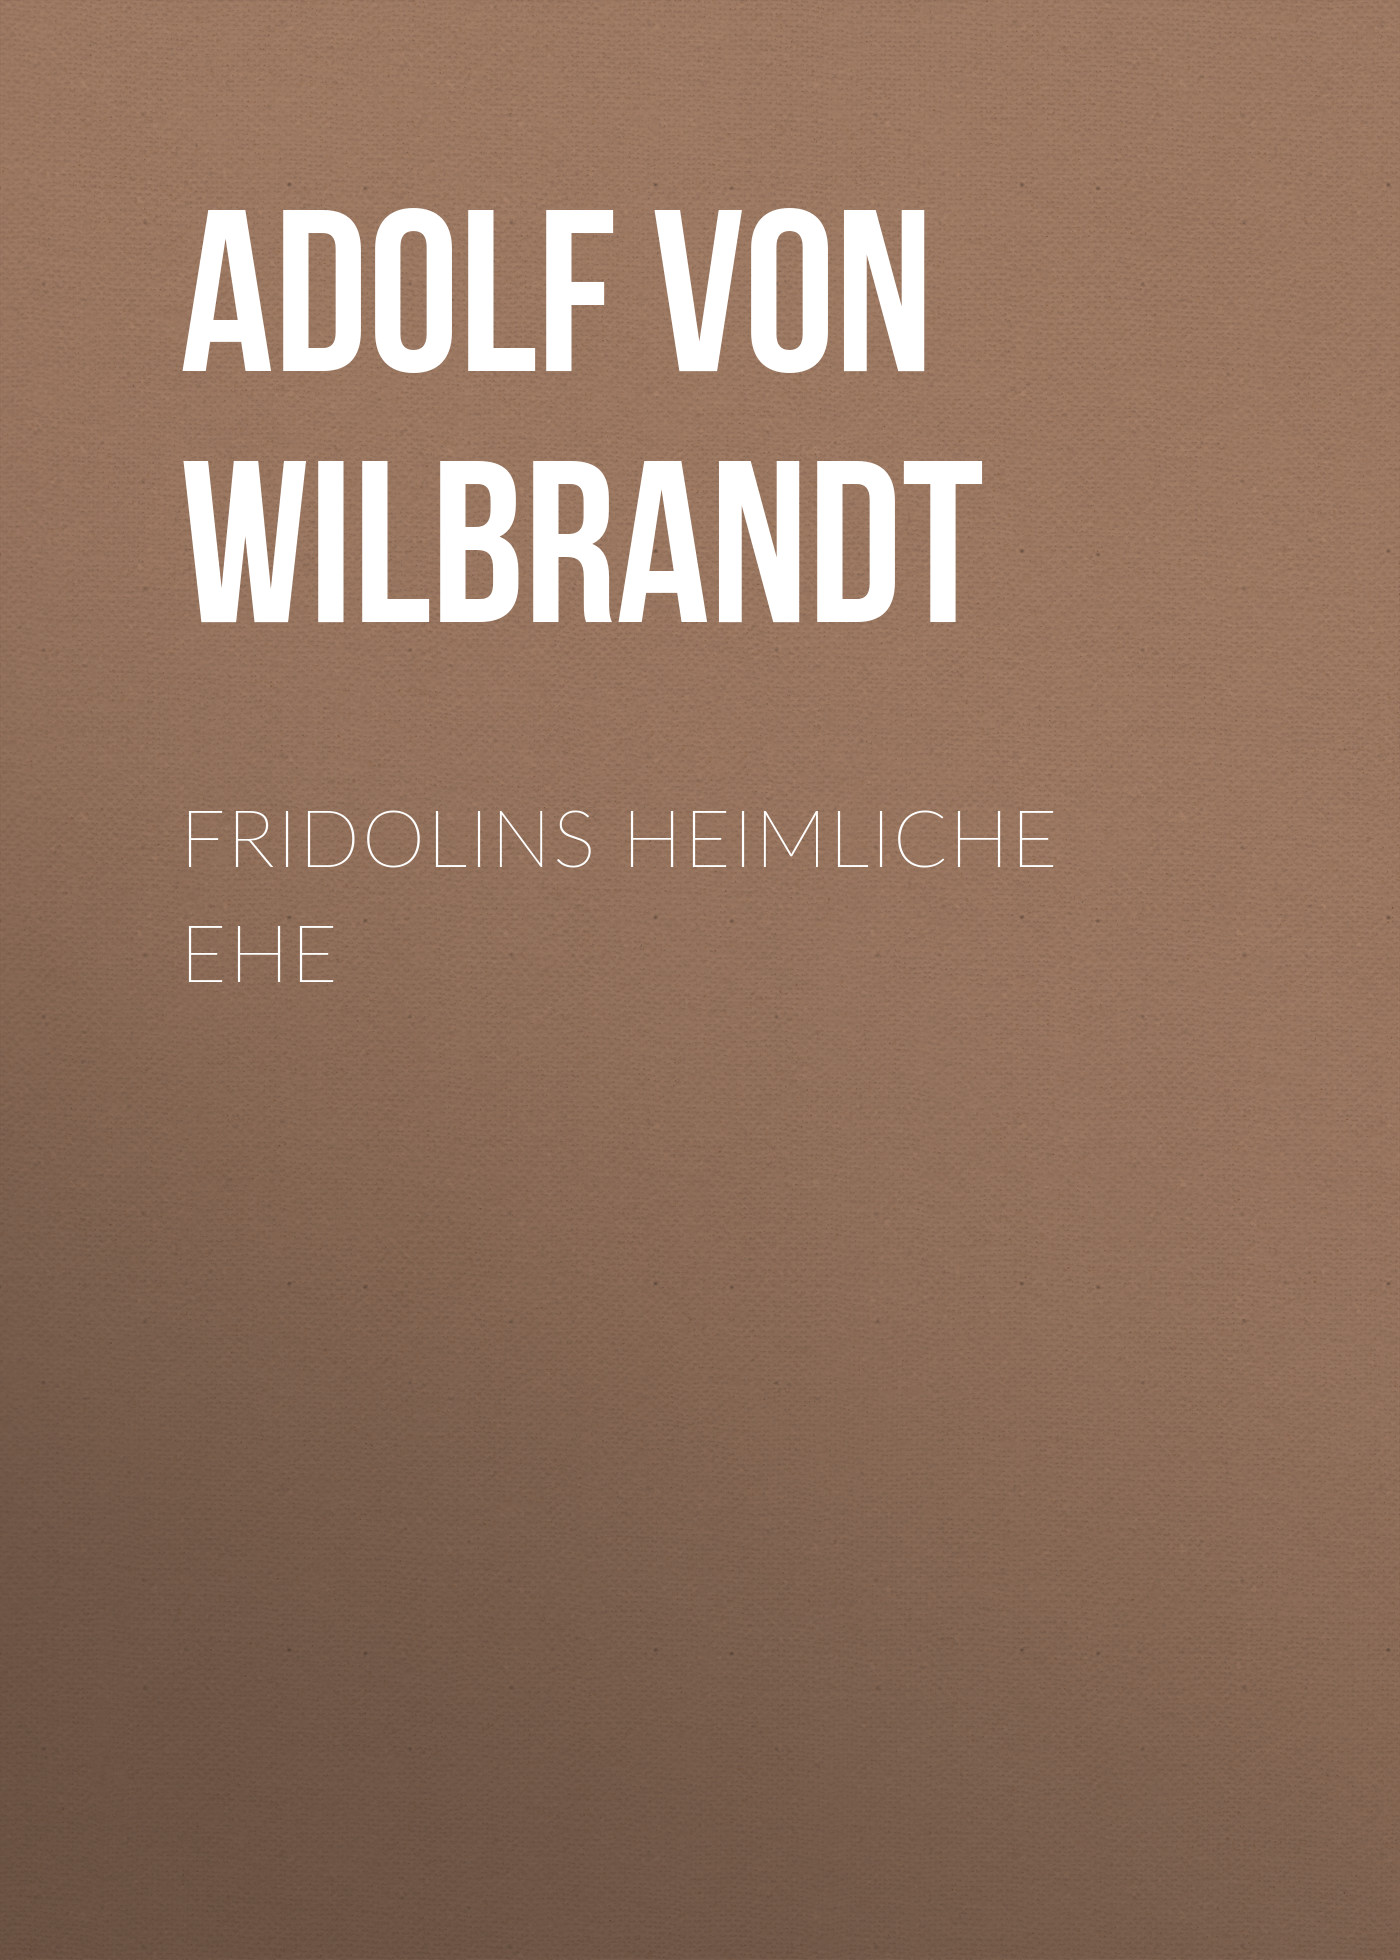 Книга Fridolins heimliche Ehe из серии , созданная Adolf Wilbrandt, может относится к жанру Зарубежная классика. Стоимость электронной книги Fridolins heimliche Ehe с идентификатором 48632316 составляет 0 руб.